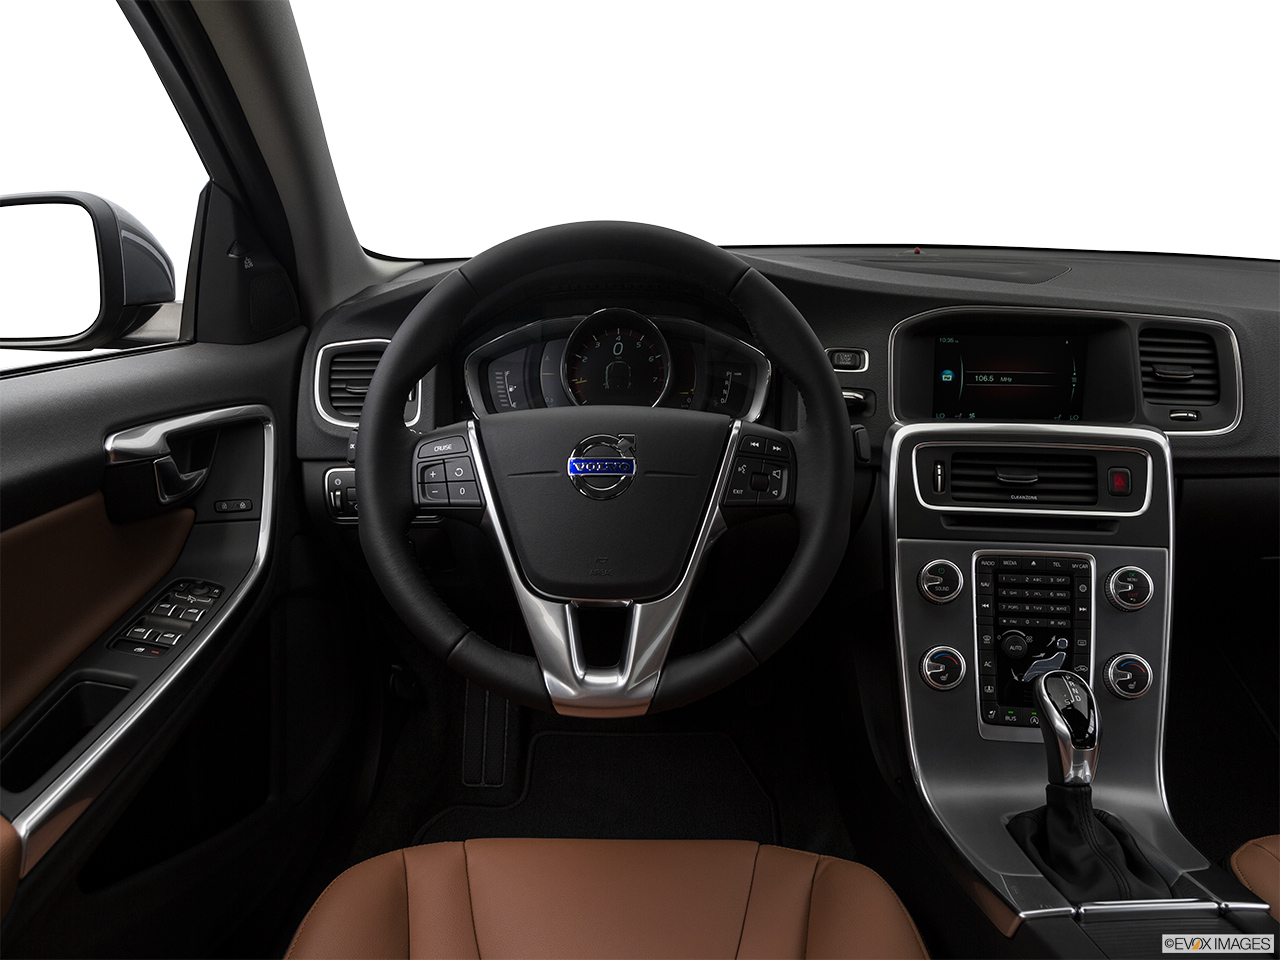 2017 Volvo S60 T5 Inscription Steering wheel/Center Console. 